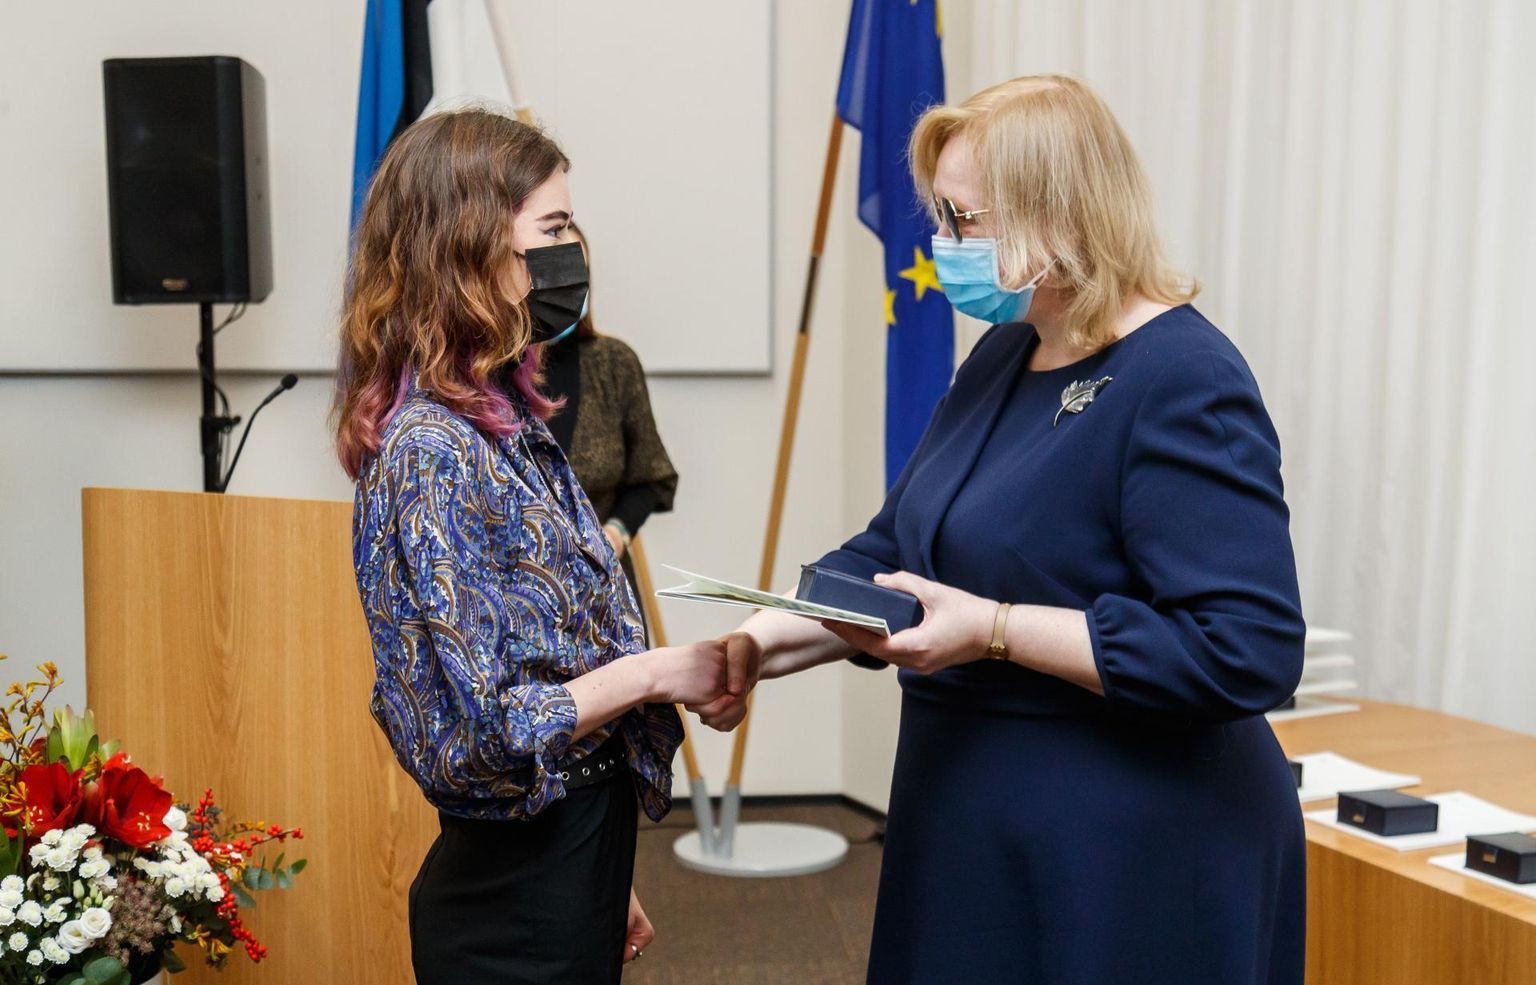 Võhma neiu Äli Bergmann sai minister Maris Laurilt kodanikujulguse aumärgi.